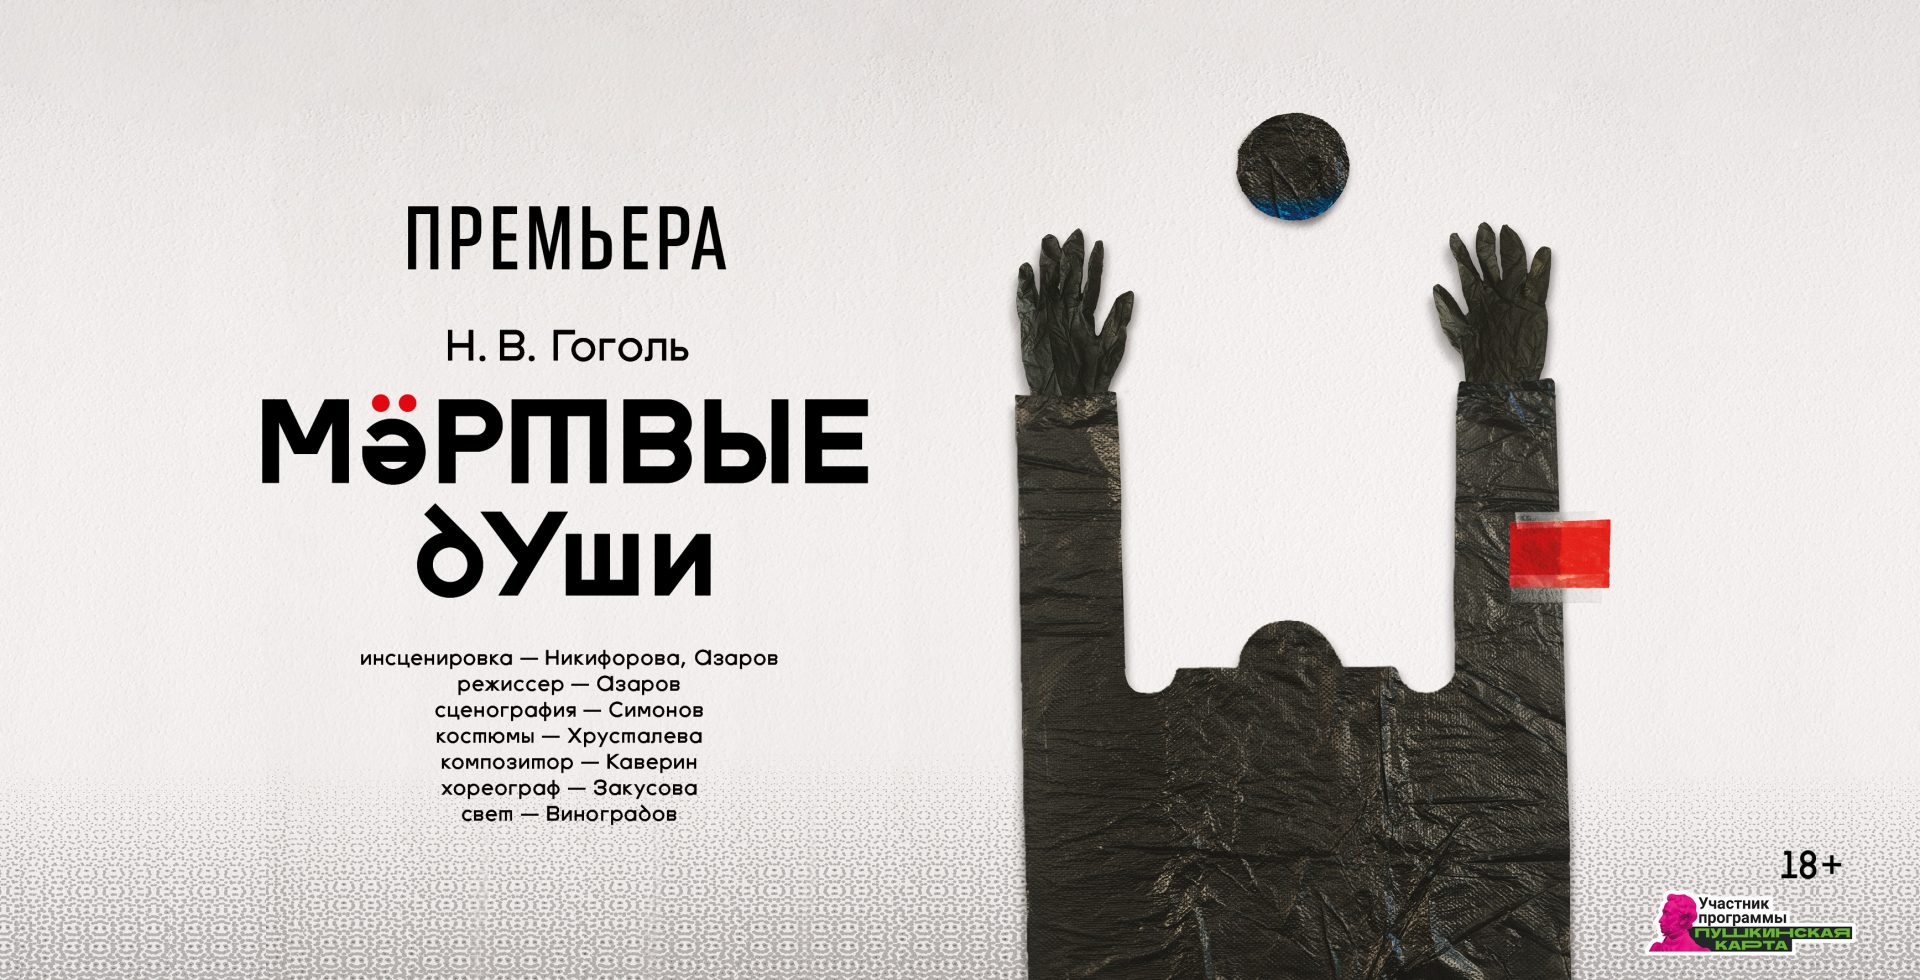 Театр Романа Виктюка 21 февраля представит премьерную постановку «Мертвые души» режиссера Дениса Азарова.